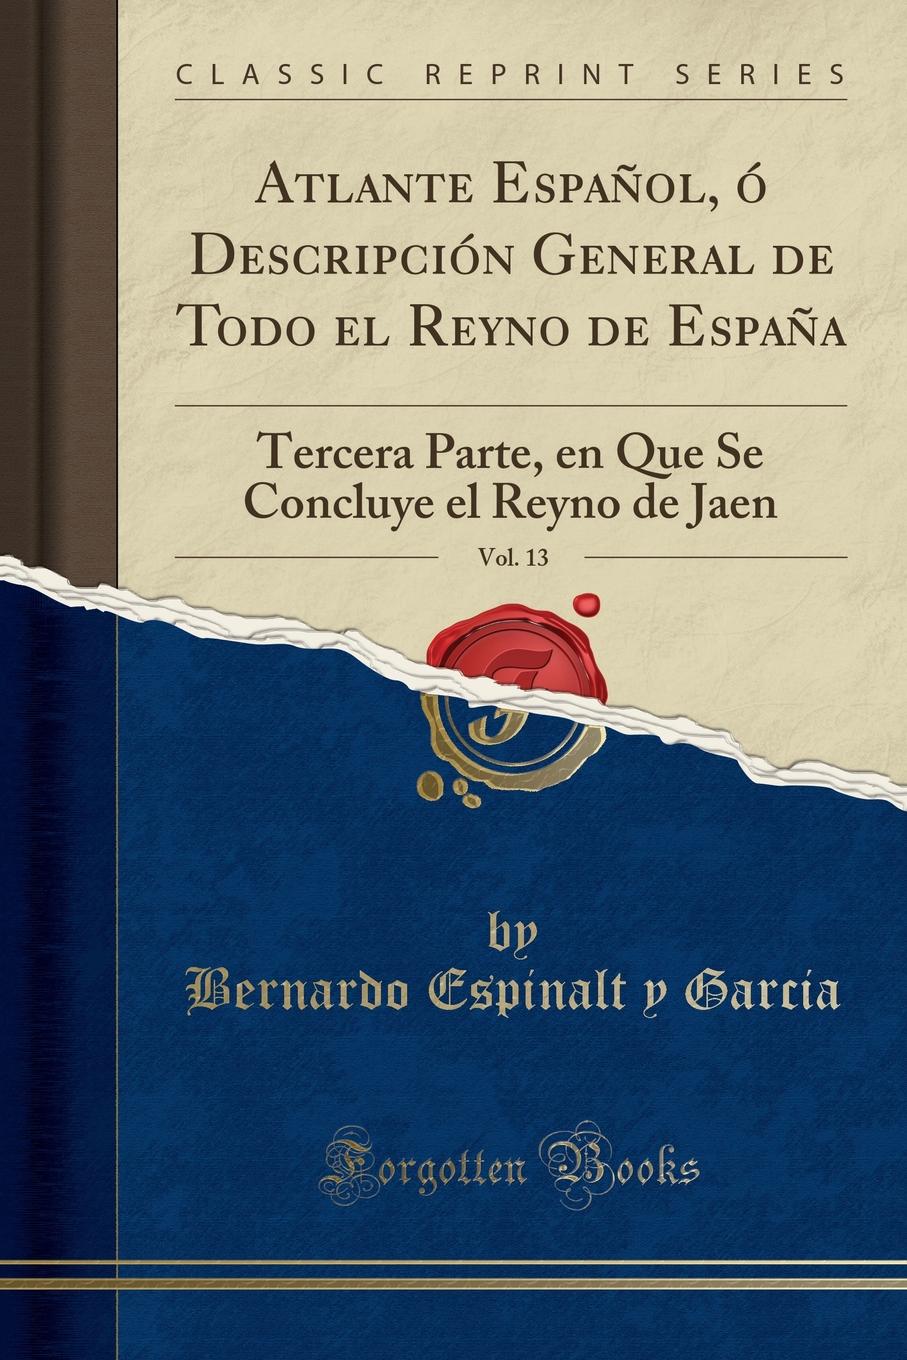 Atlante Espanol, o Descripcion General de Todo el Reyno de Espana, Vol. 13. Tercera Parte, en Que Se Concluye el Reyno de Jaen (Classic Reprint)